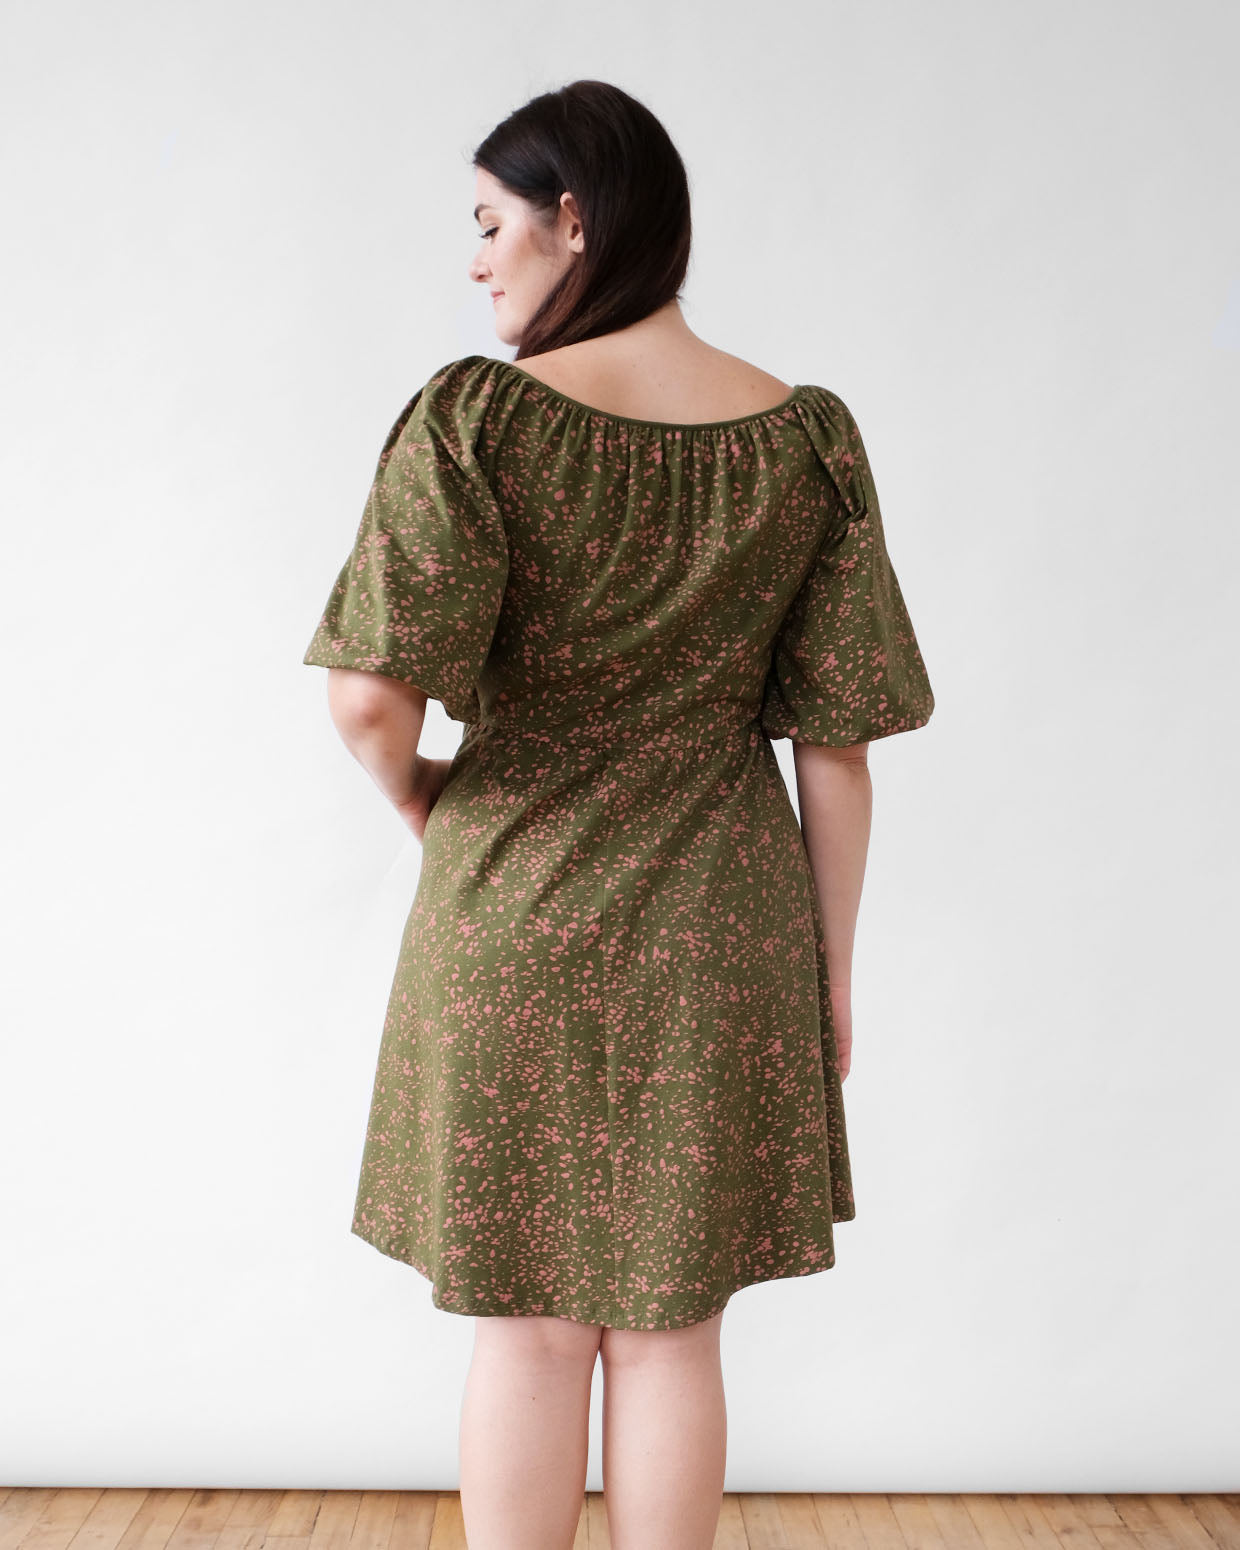 SADIE printed dress in Olive/Clay – Elegantees